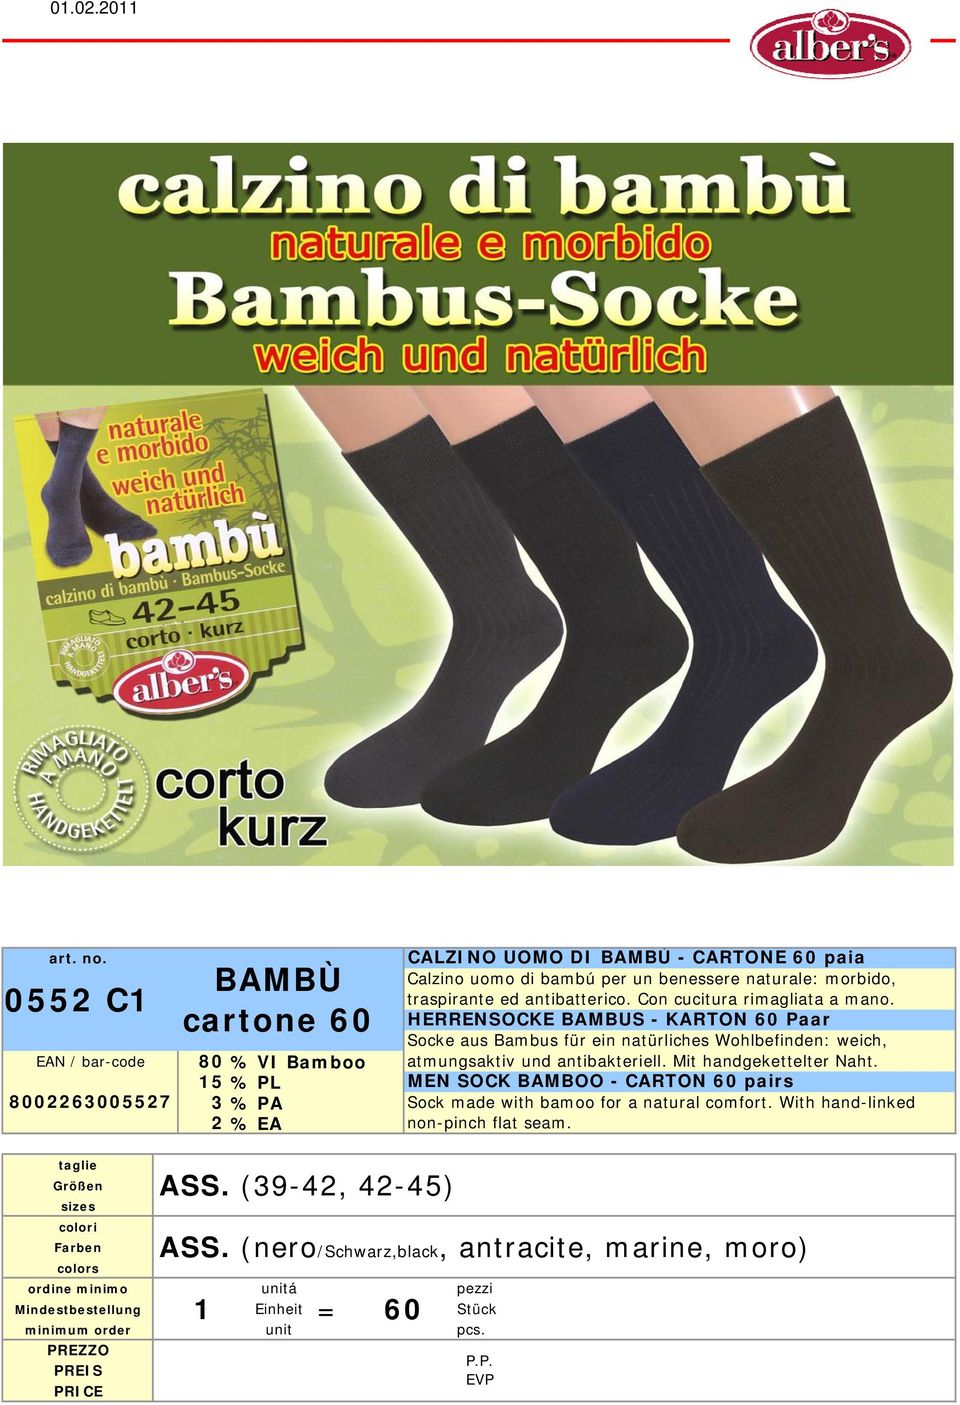 HERRENSOCKE BAMBUS - KARTON 60 Paar Socke aus Bambus für ein natürliches Wohlbefinden: weich, % VI Bamboo atmungsaktiv und antibakteriell.